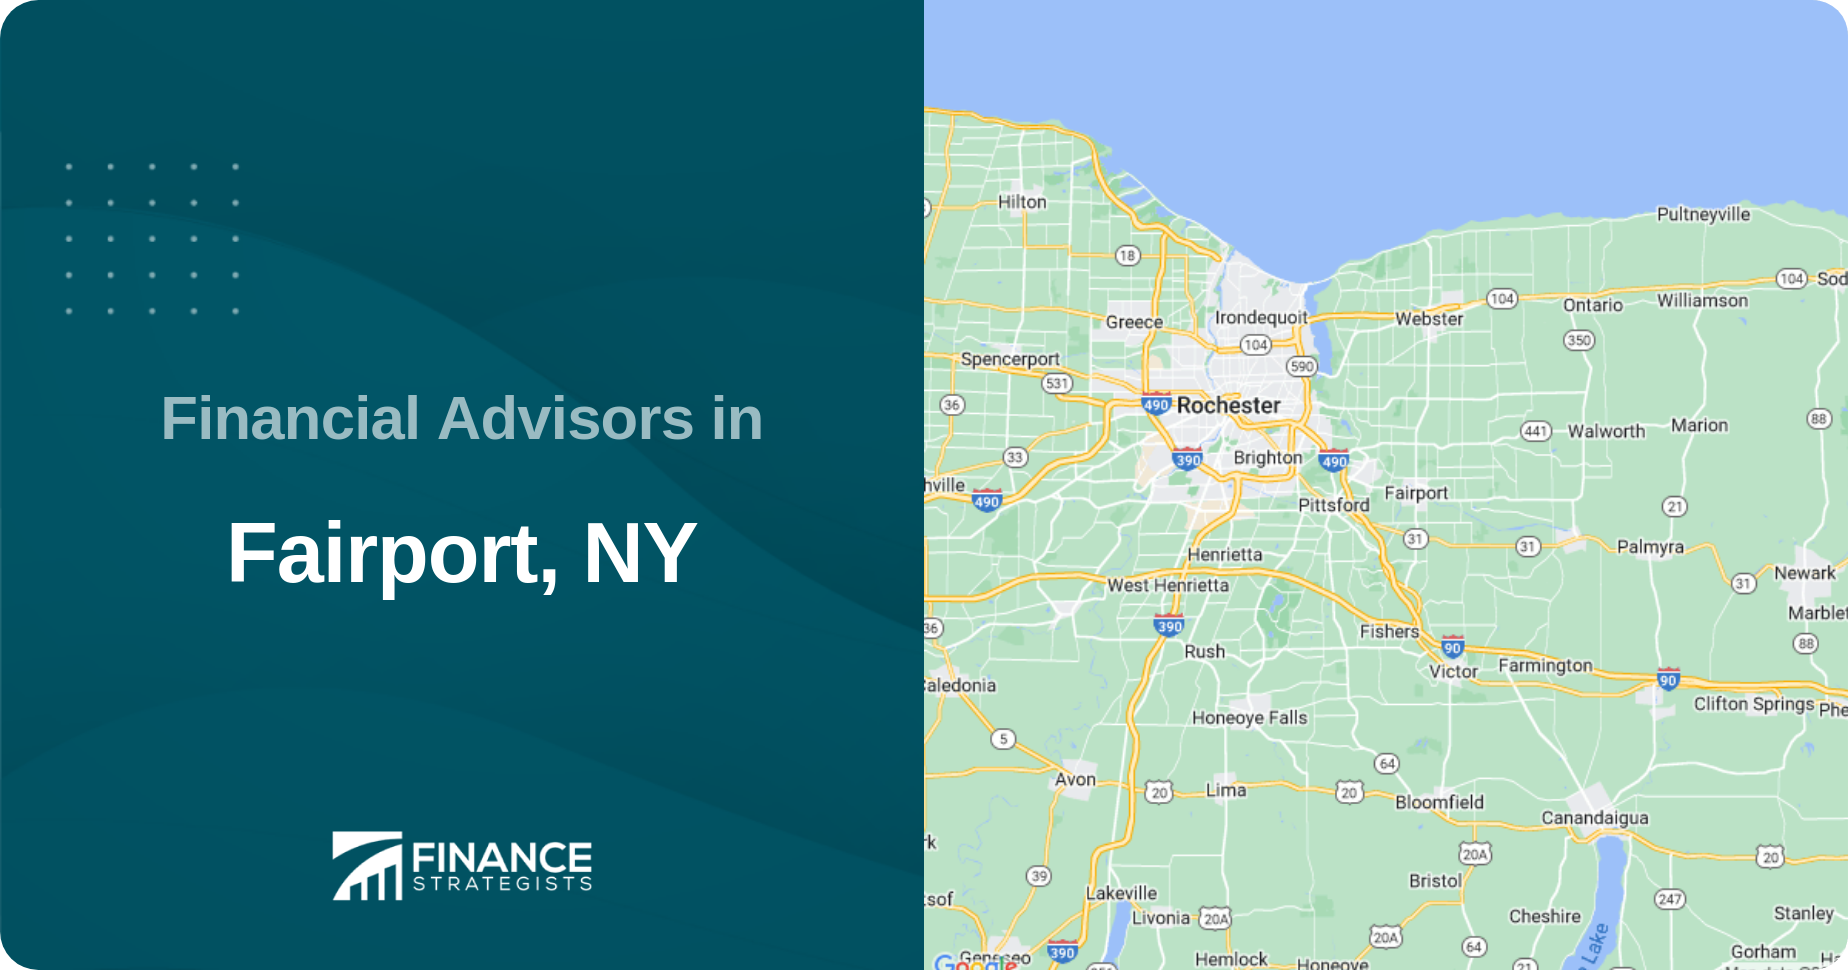 Financial Advisors in Fairport, NY